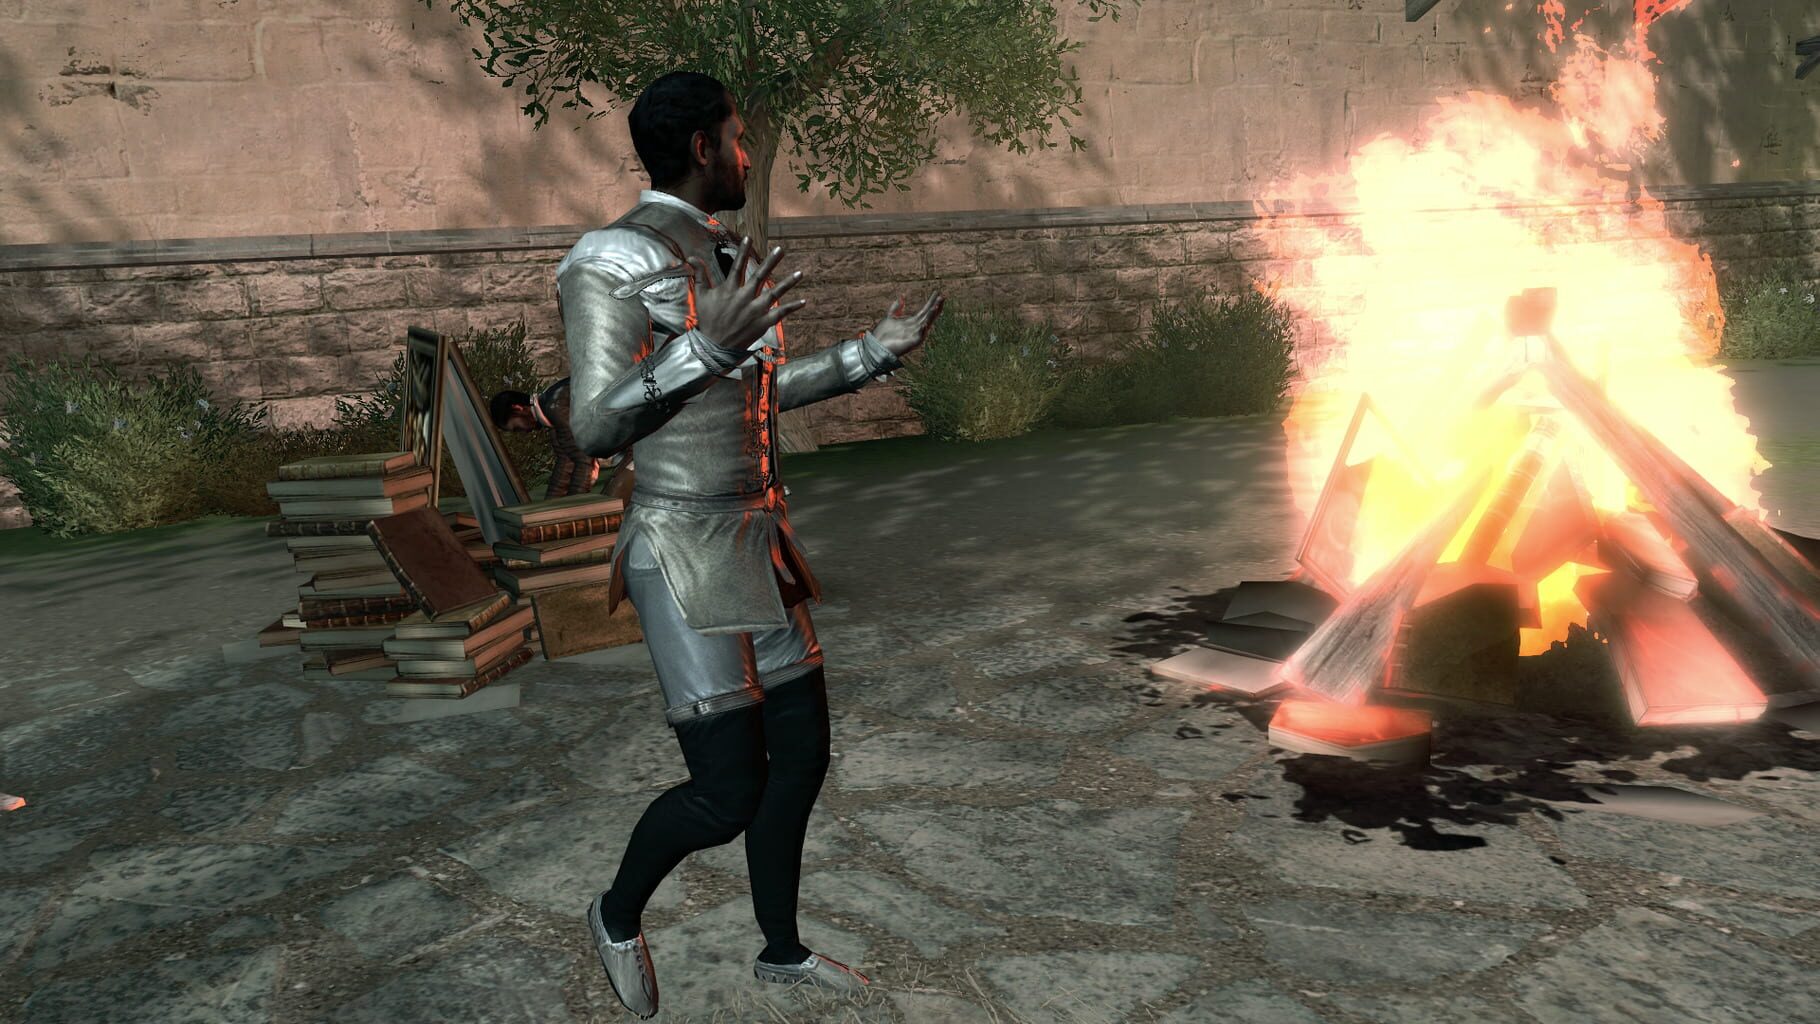 Assassin's Creed II: Bonfire of the Vanities Image